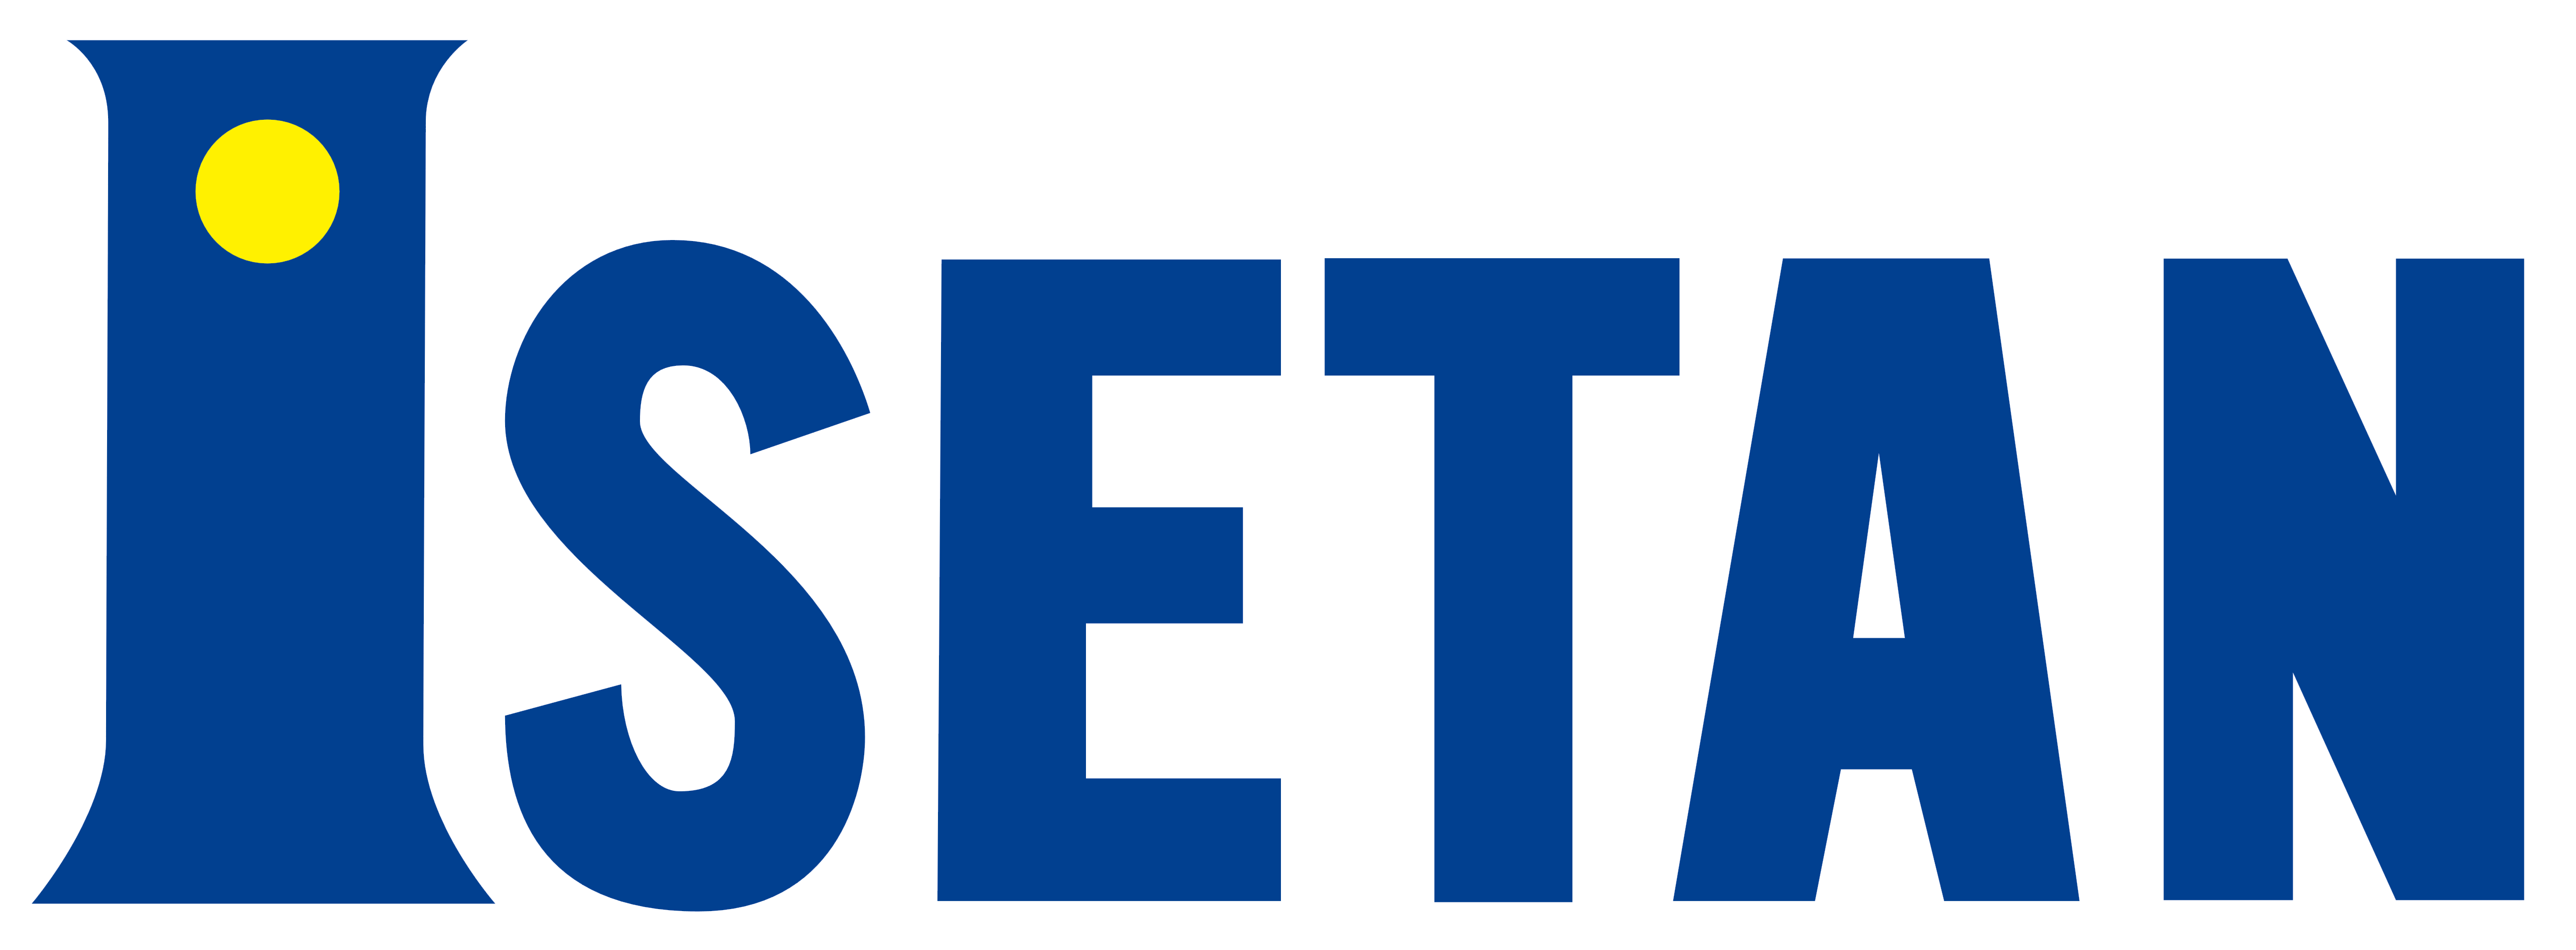 Isetan – Logos Download